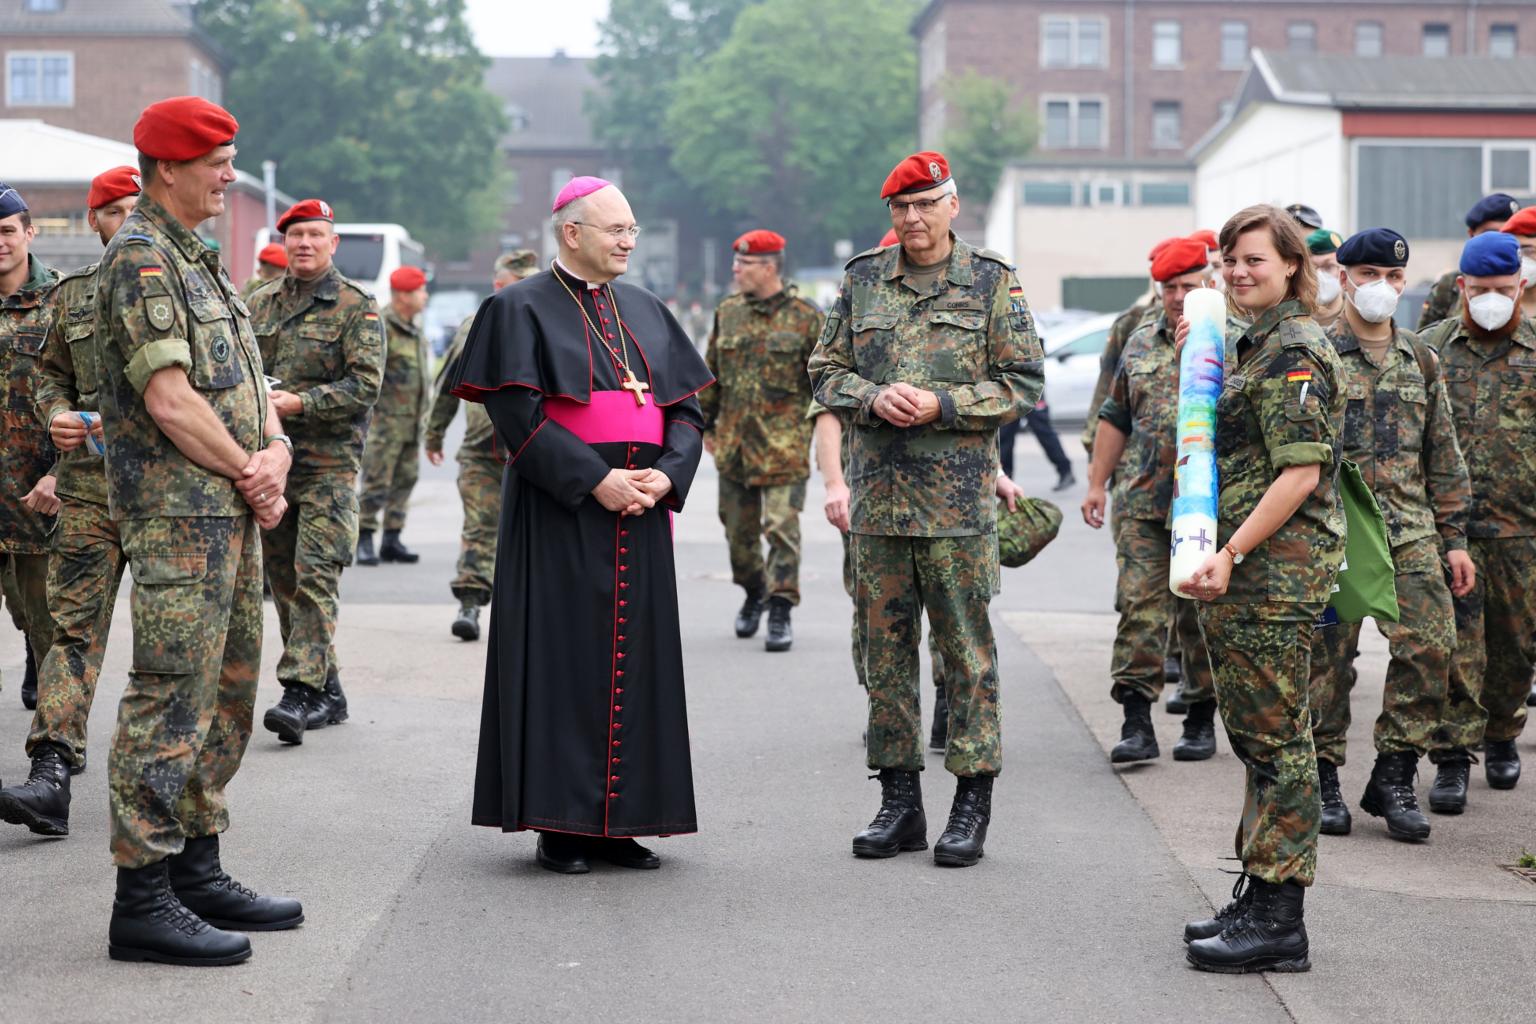 Friedensgottesdienst mit 300 Soldatinnen und Soldaten in der Lützow-Kaserne (c) Bistum Aachen / Andreas Steindl